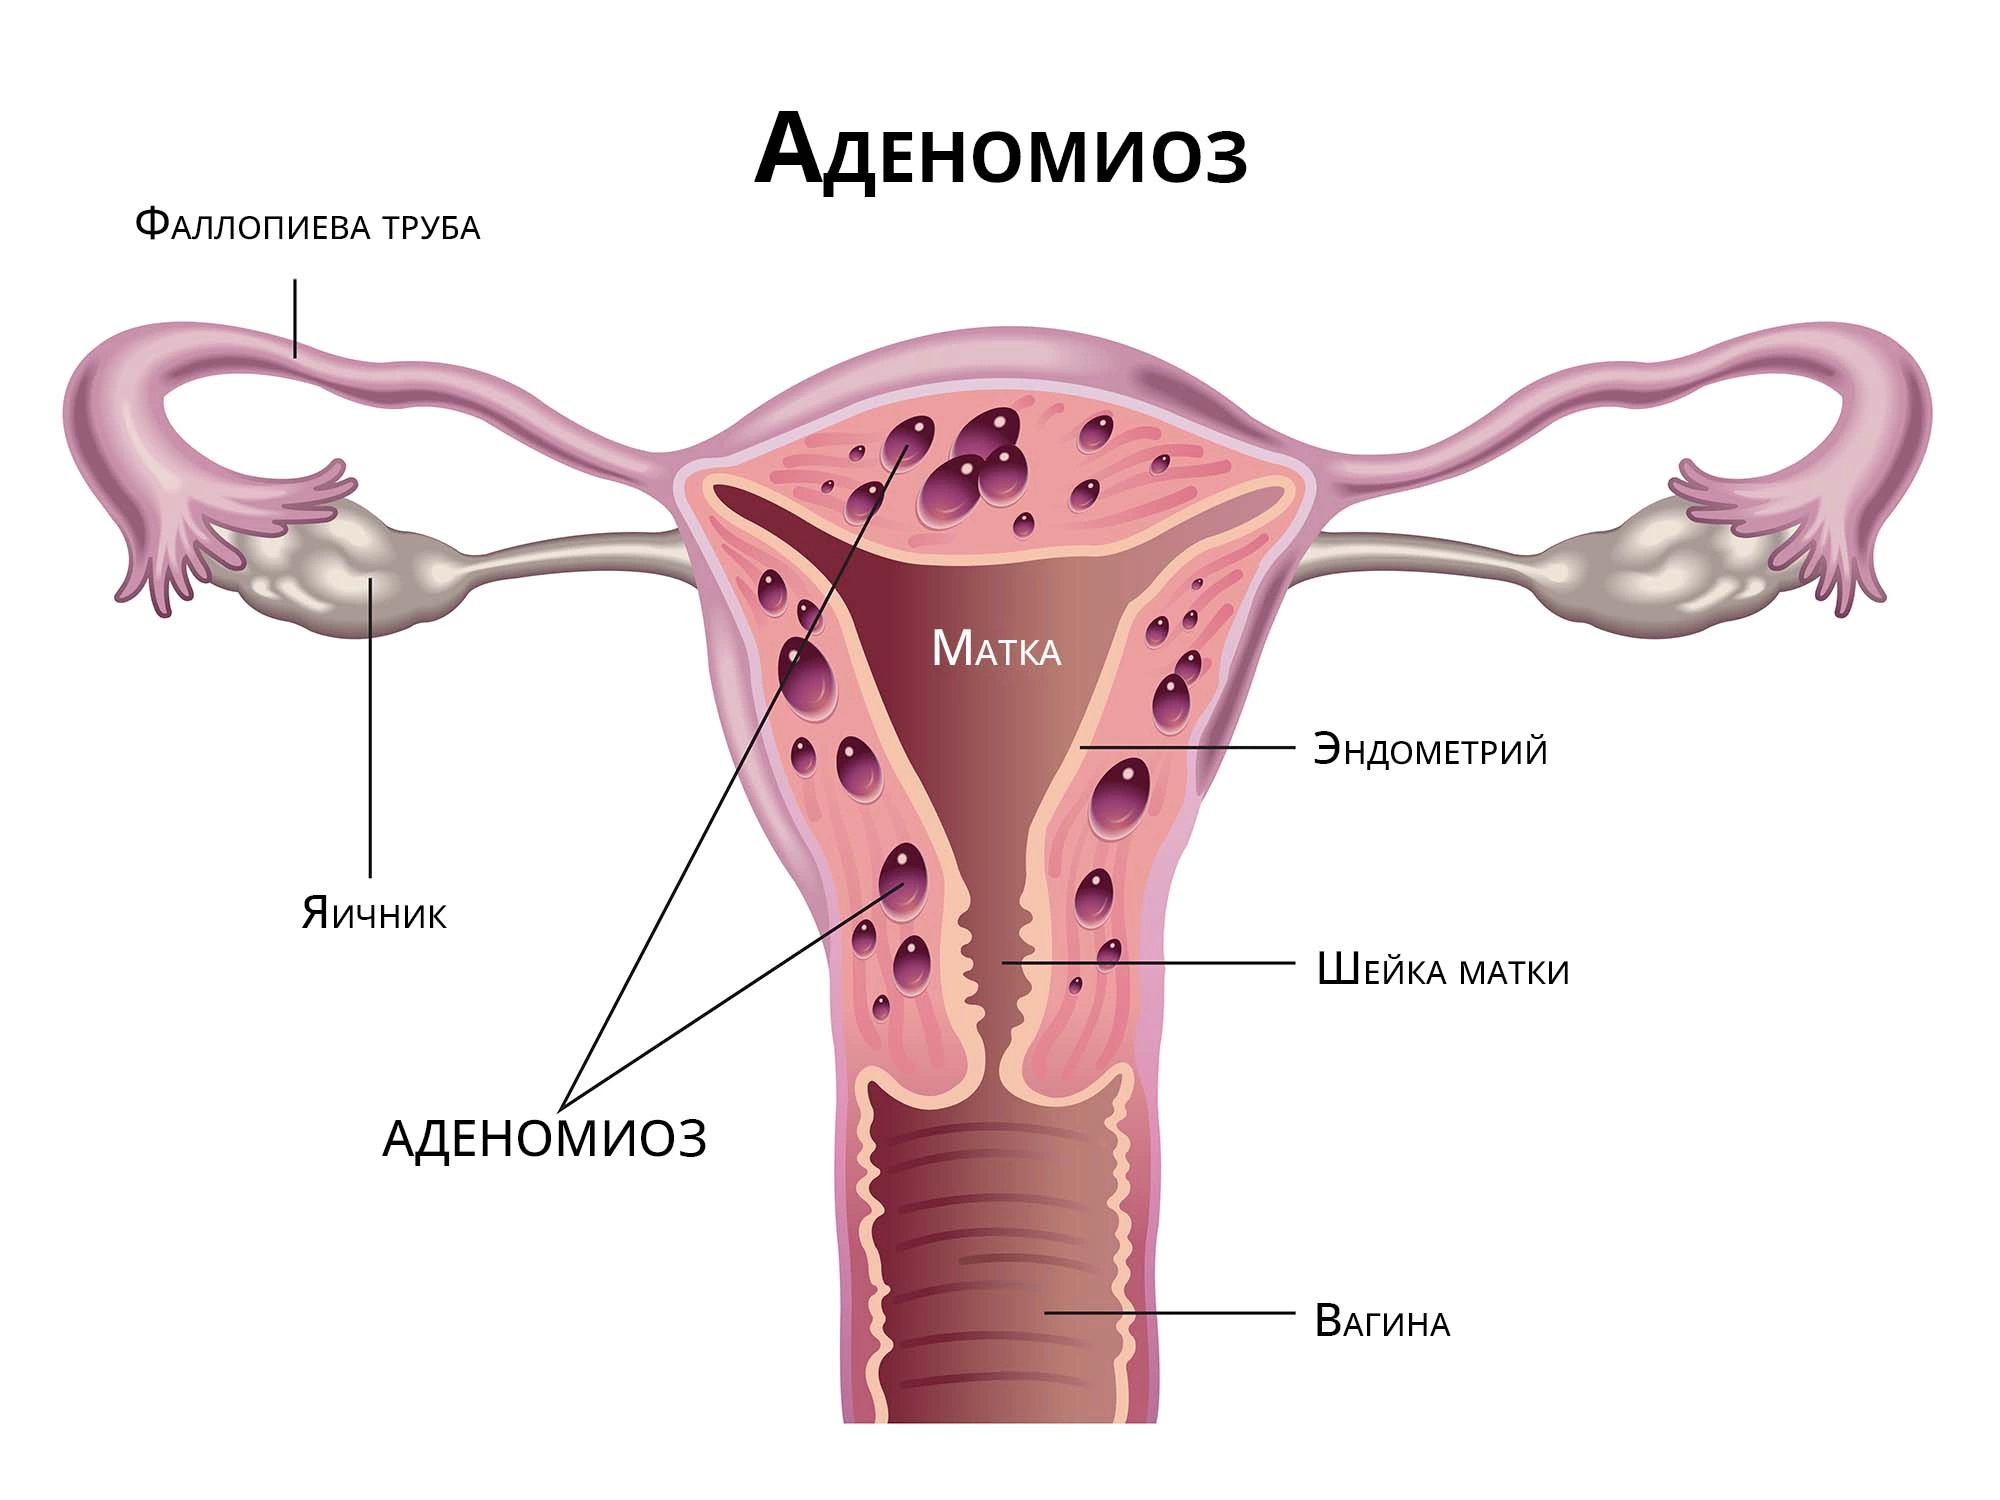 Возможно ли лечение эндометриоза матки народными средствами?